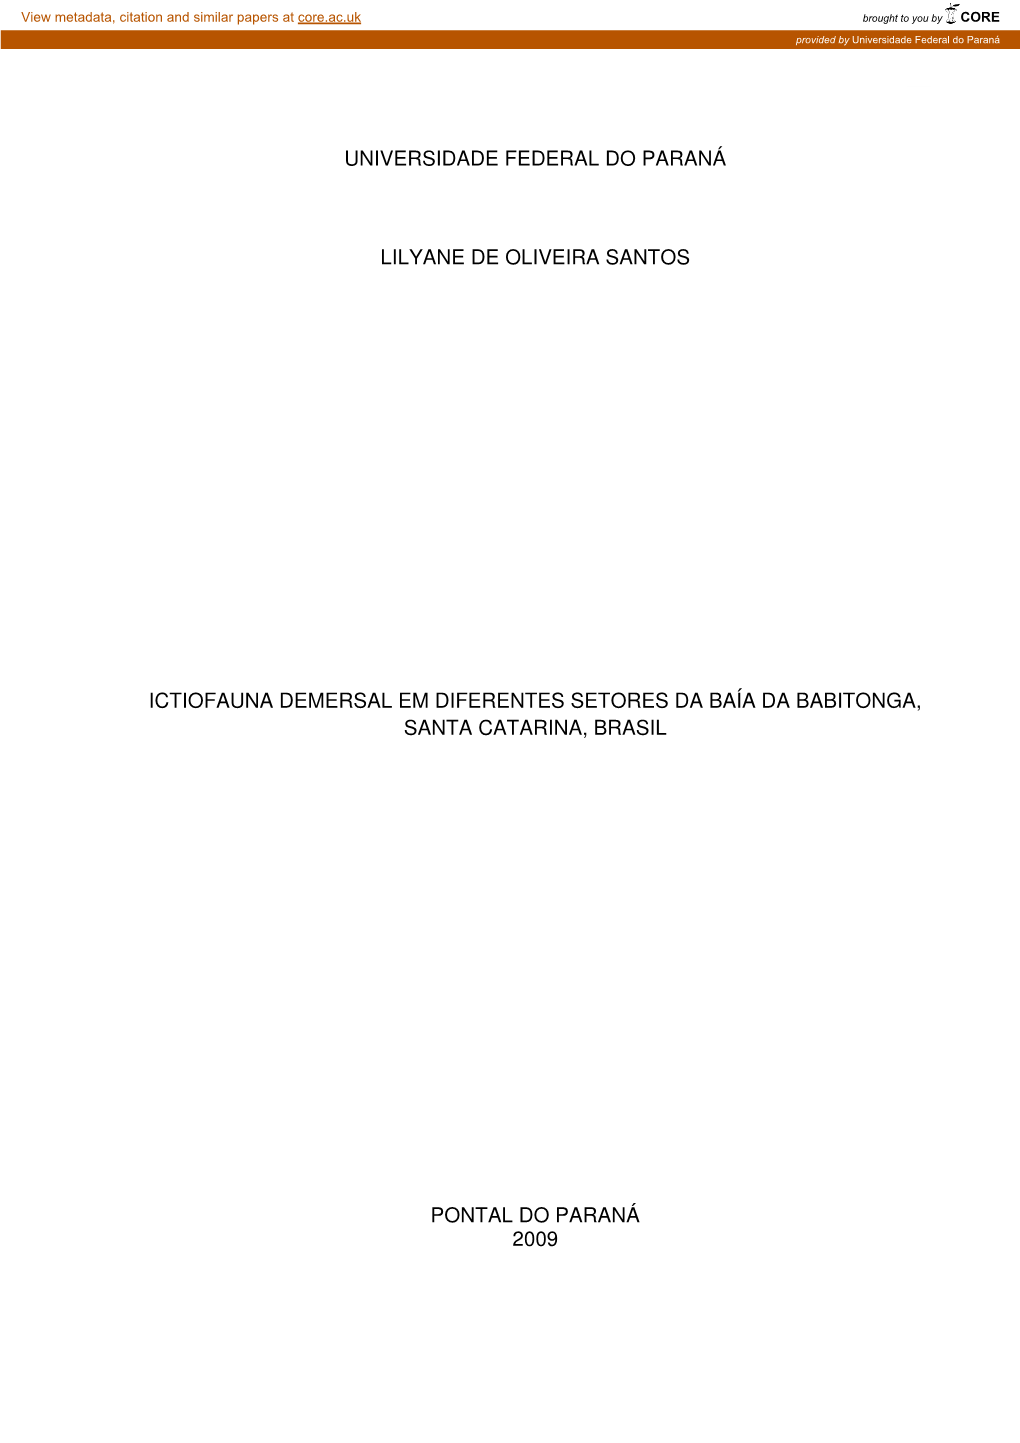 Dissertação Lilyane De Oliveira Santos